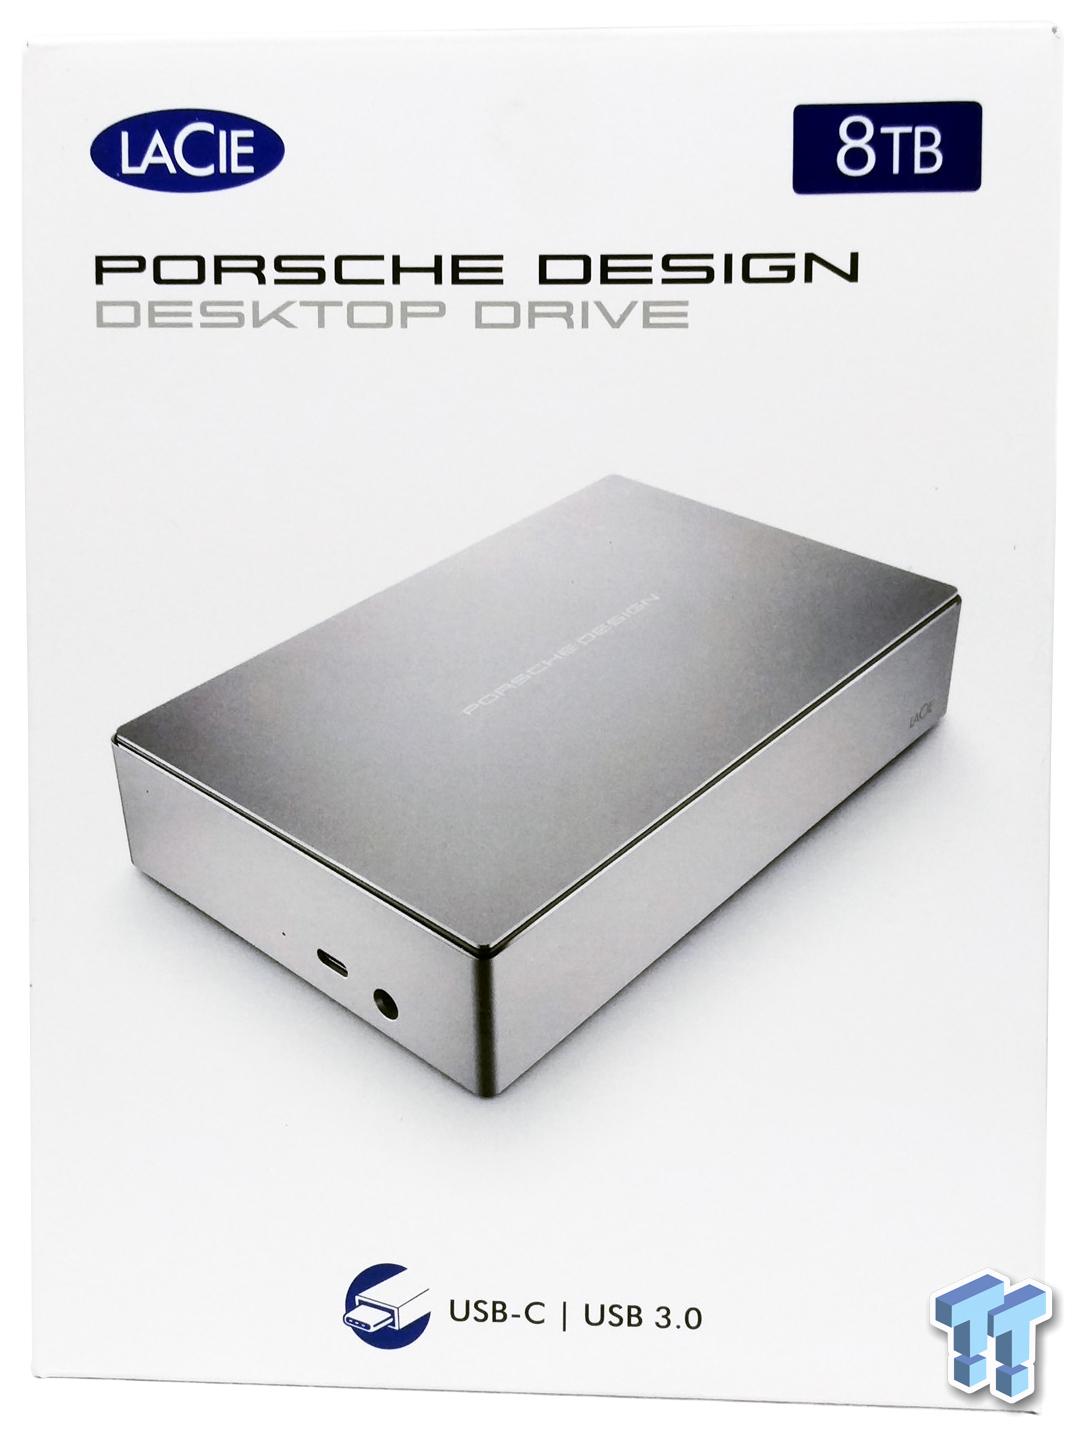 Lacie Porsche Design P9237 8tb Desktop Drive Review Tweaktown